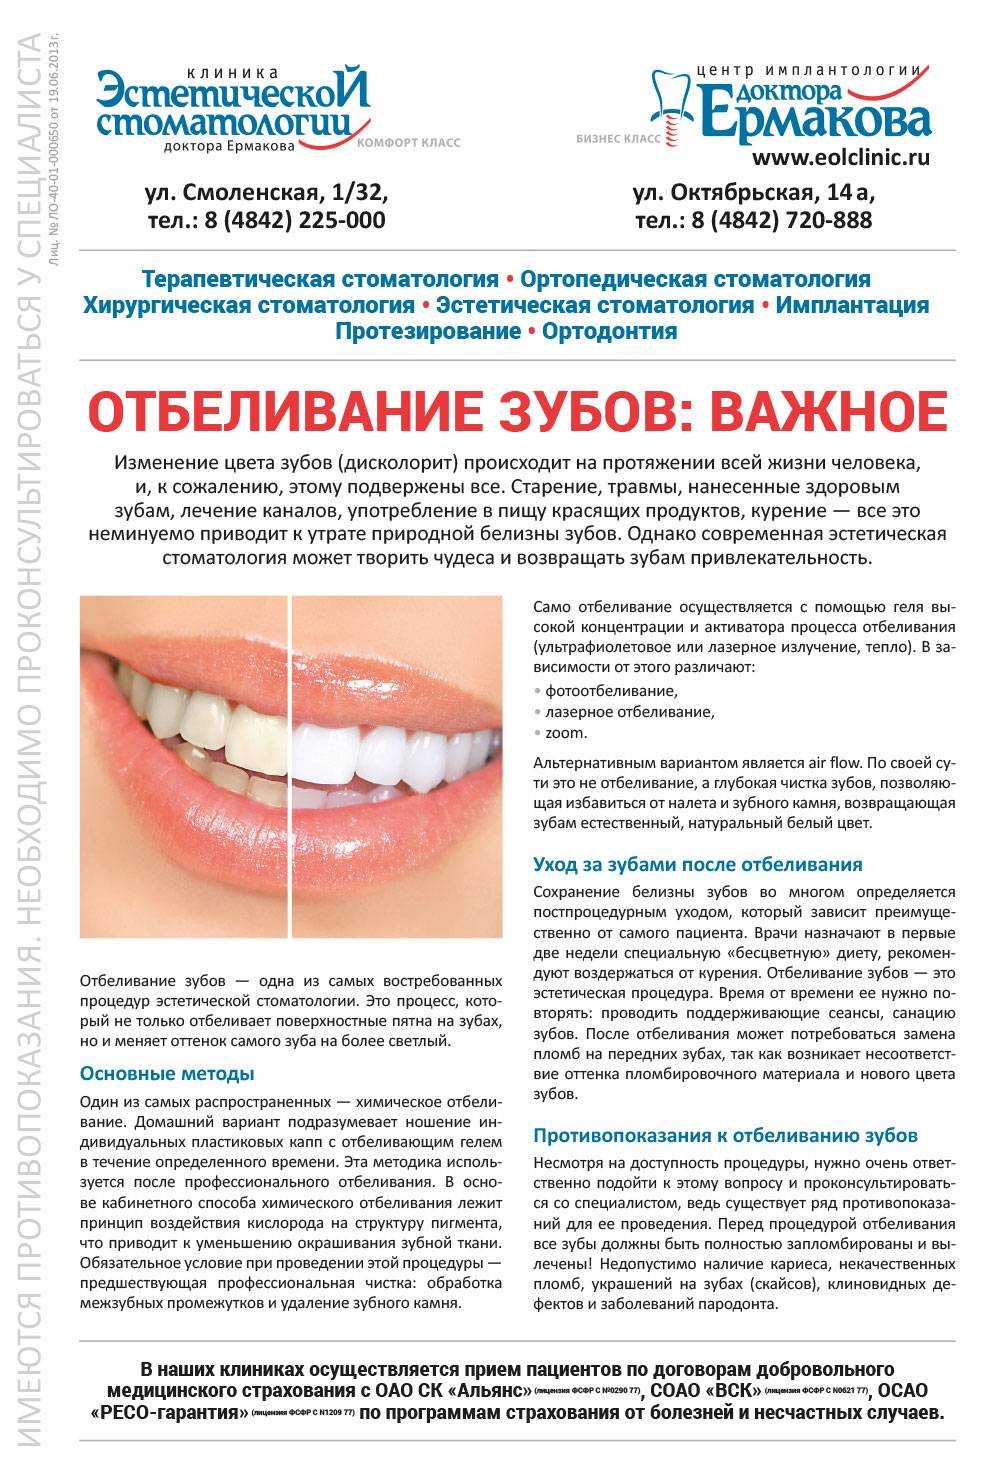 Отбеливание беременным зубов donfeel hsd 008 k1